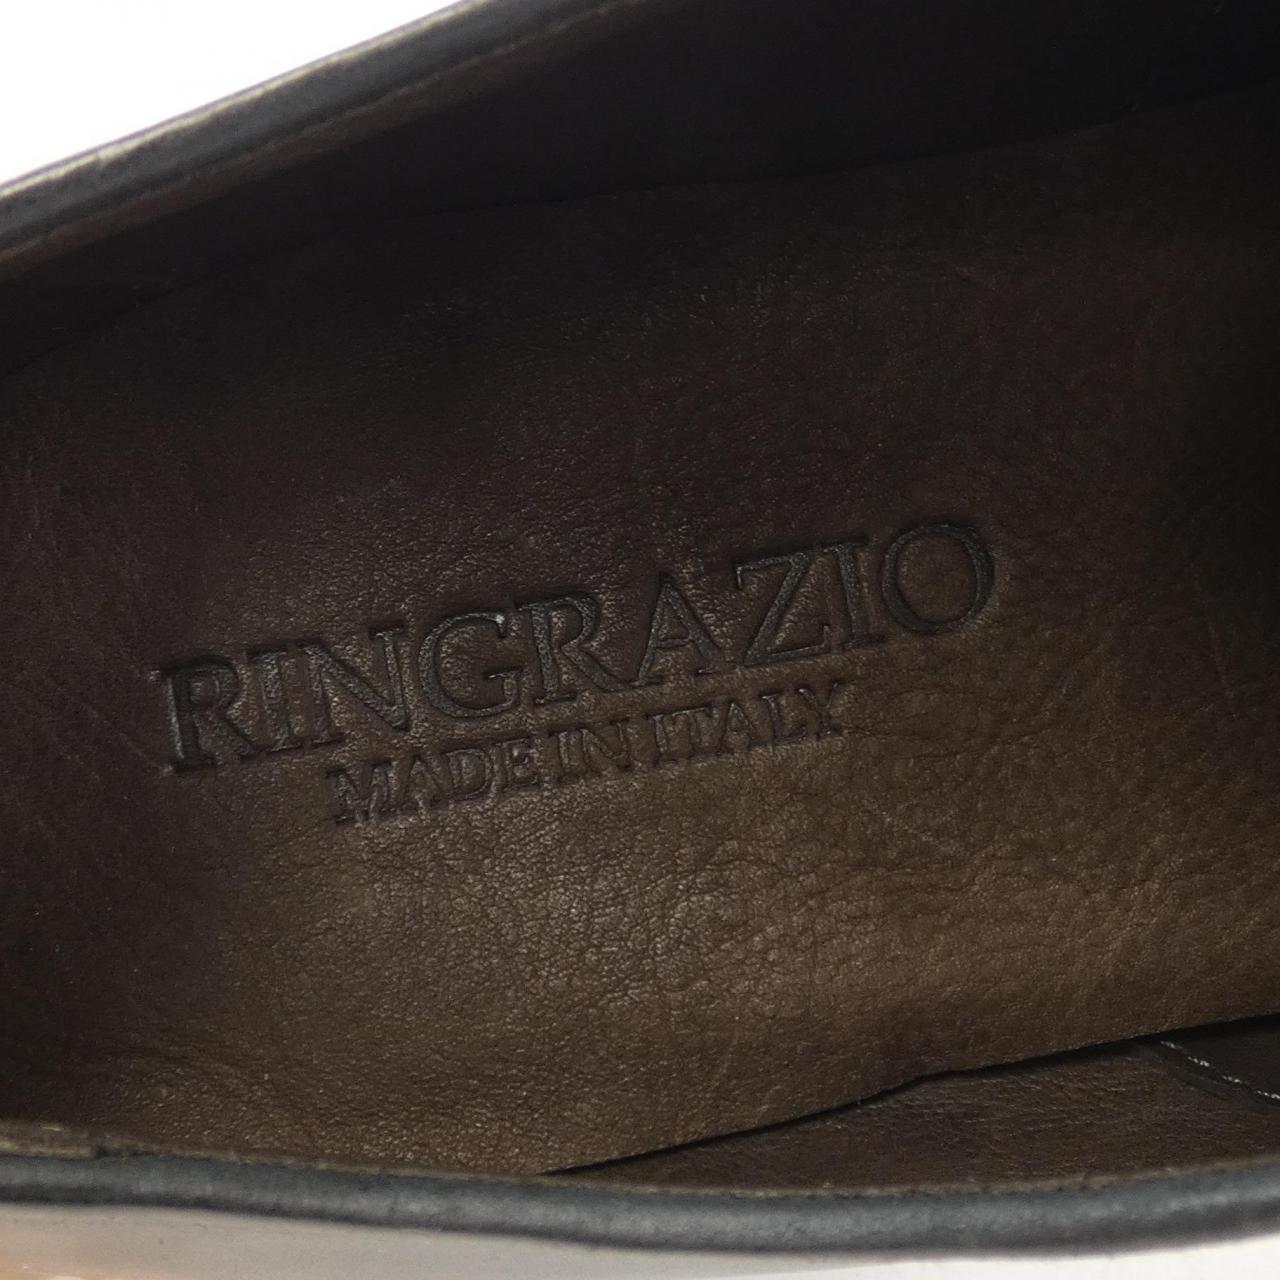 RINGRAZIO shoes